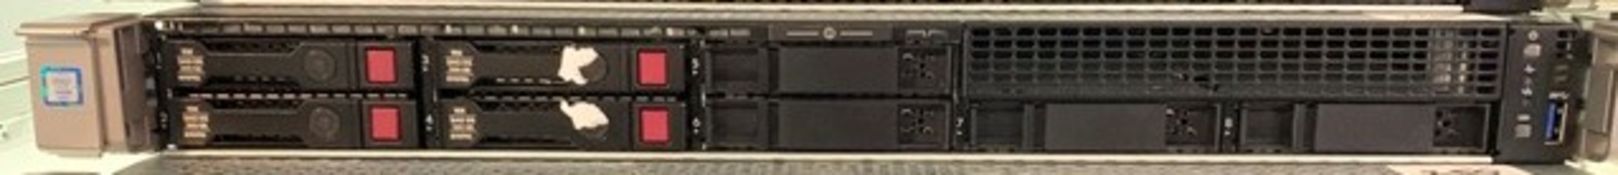 Hewlett Packard model HSTN HSTNS-2416 Pro Xeon rack server 32Gb RAM 280Gb HD